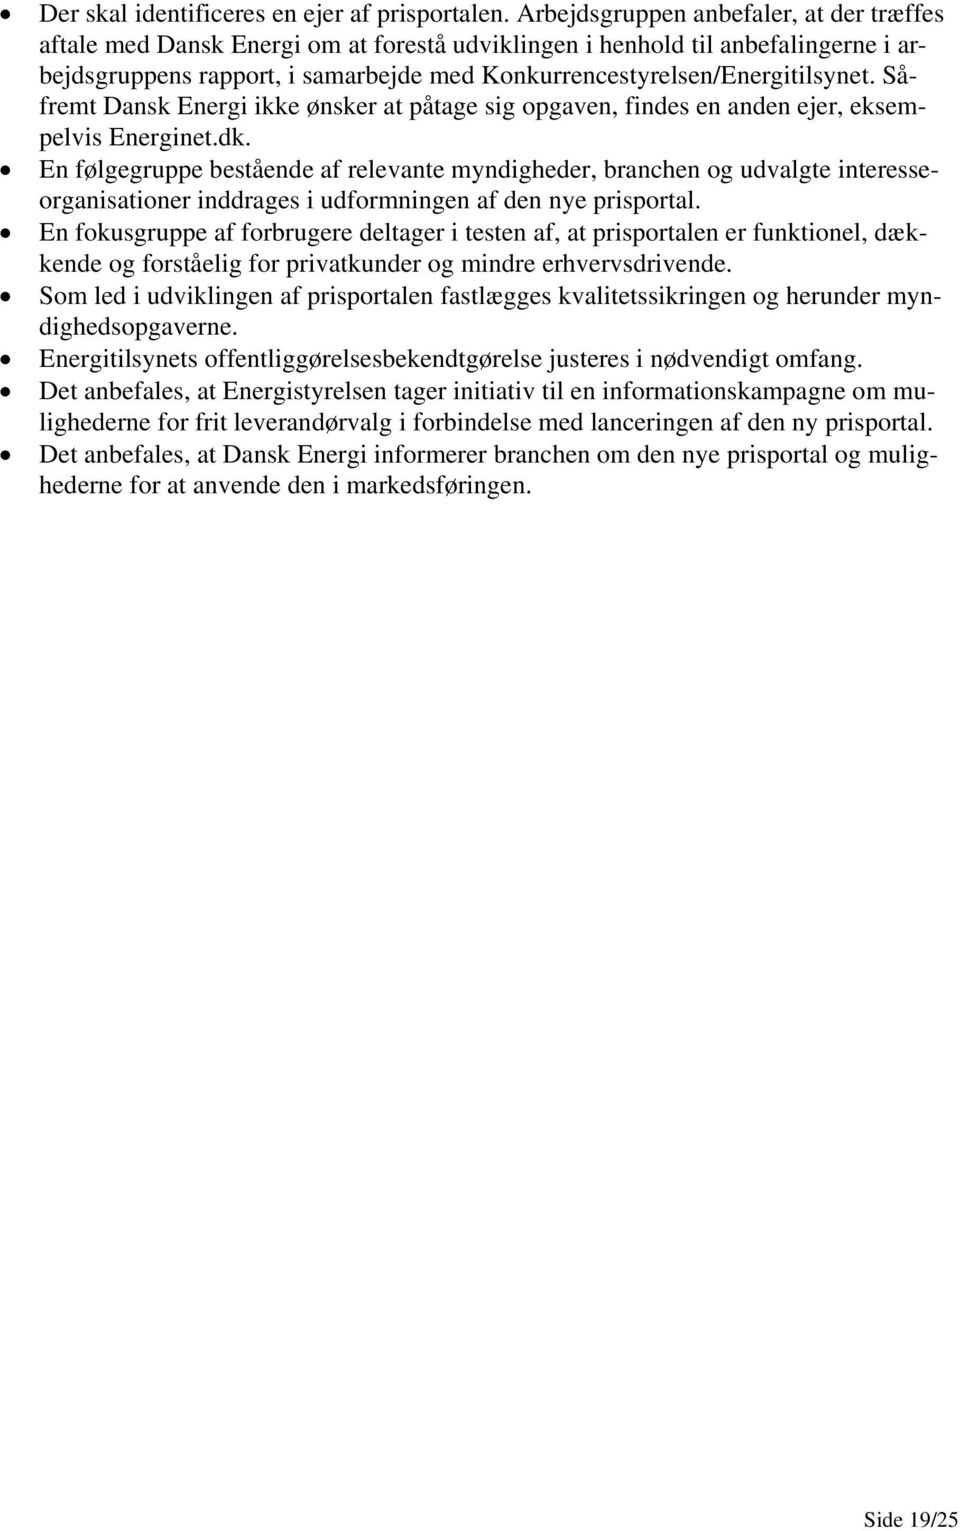 Såfremt Dansk Energi ikke ønsker at påtage sig opgaven, findes en anden ejer, eksempelvis Energinet.dk.